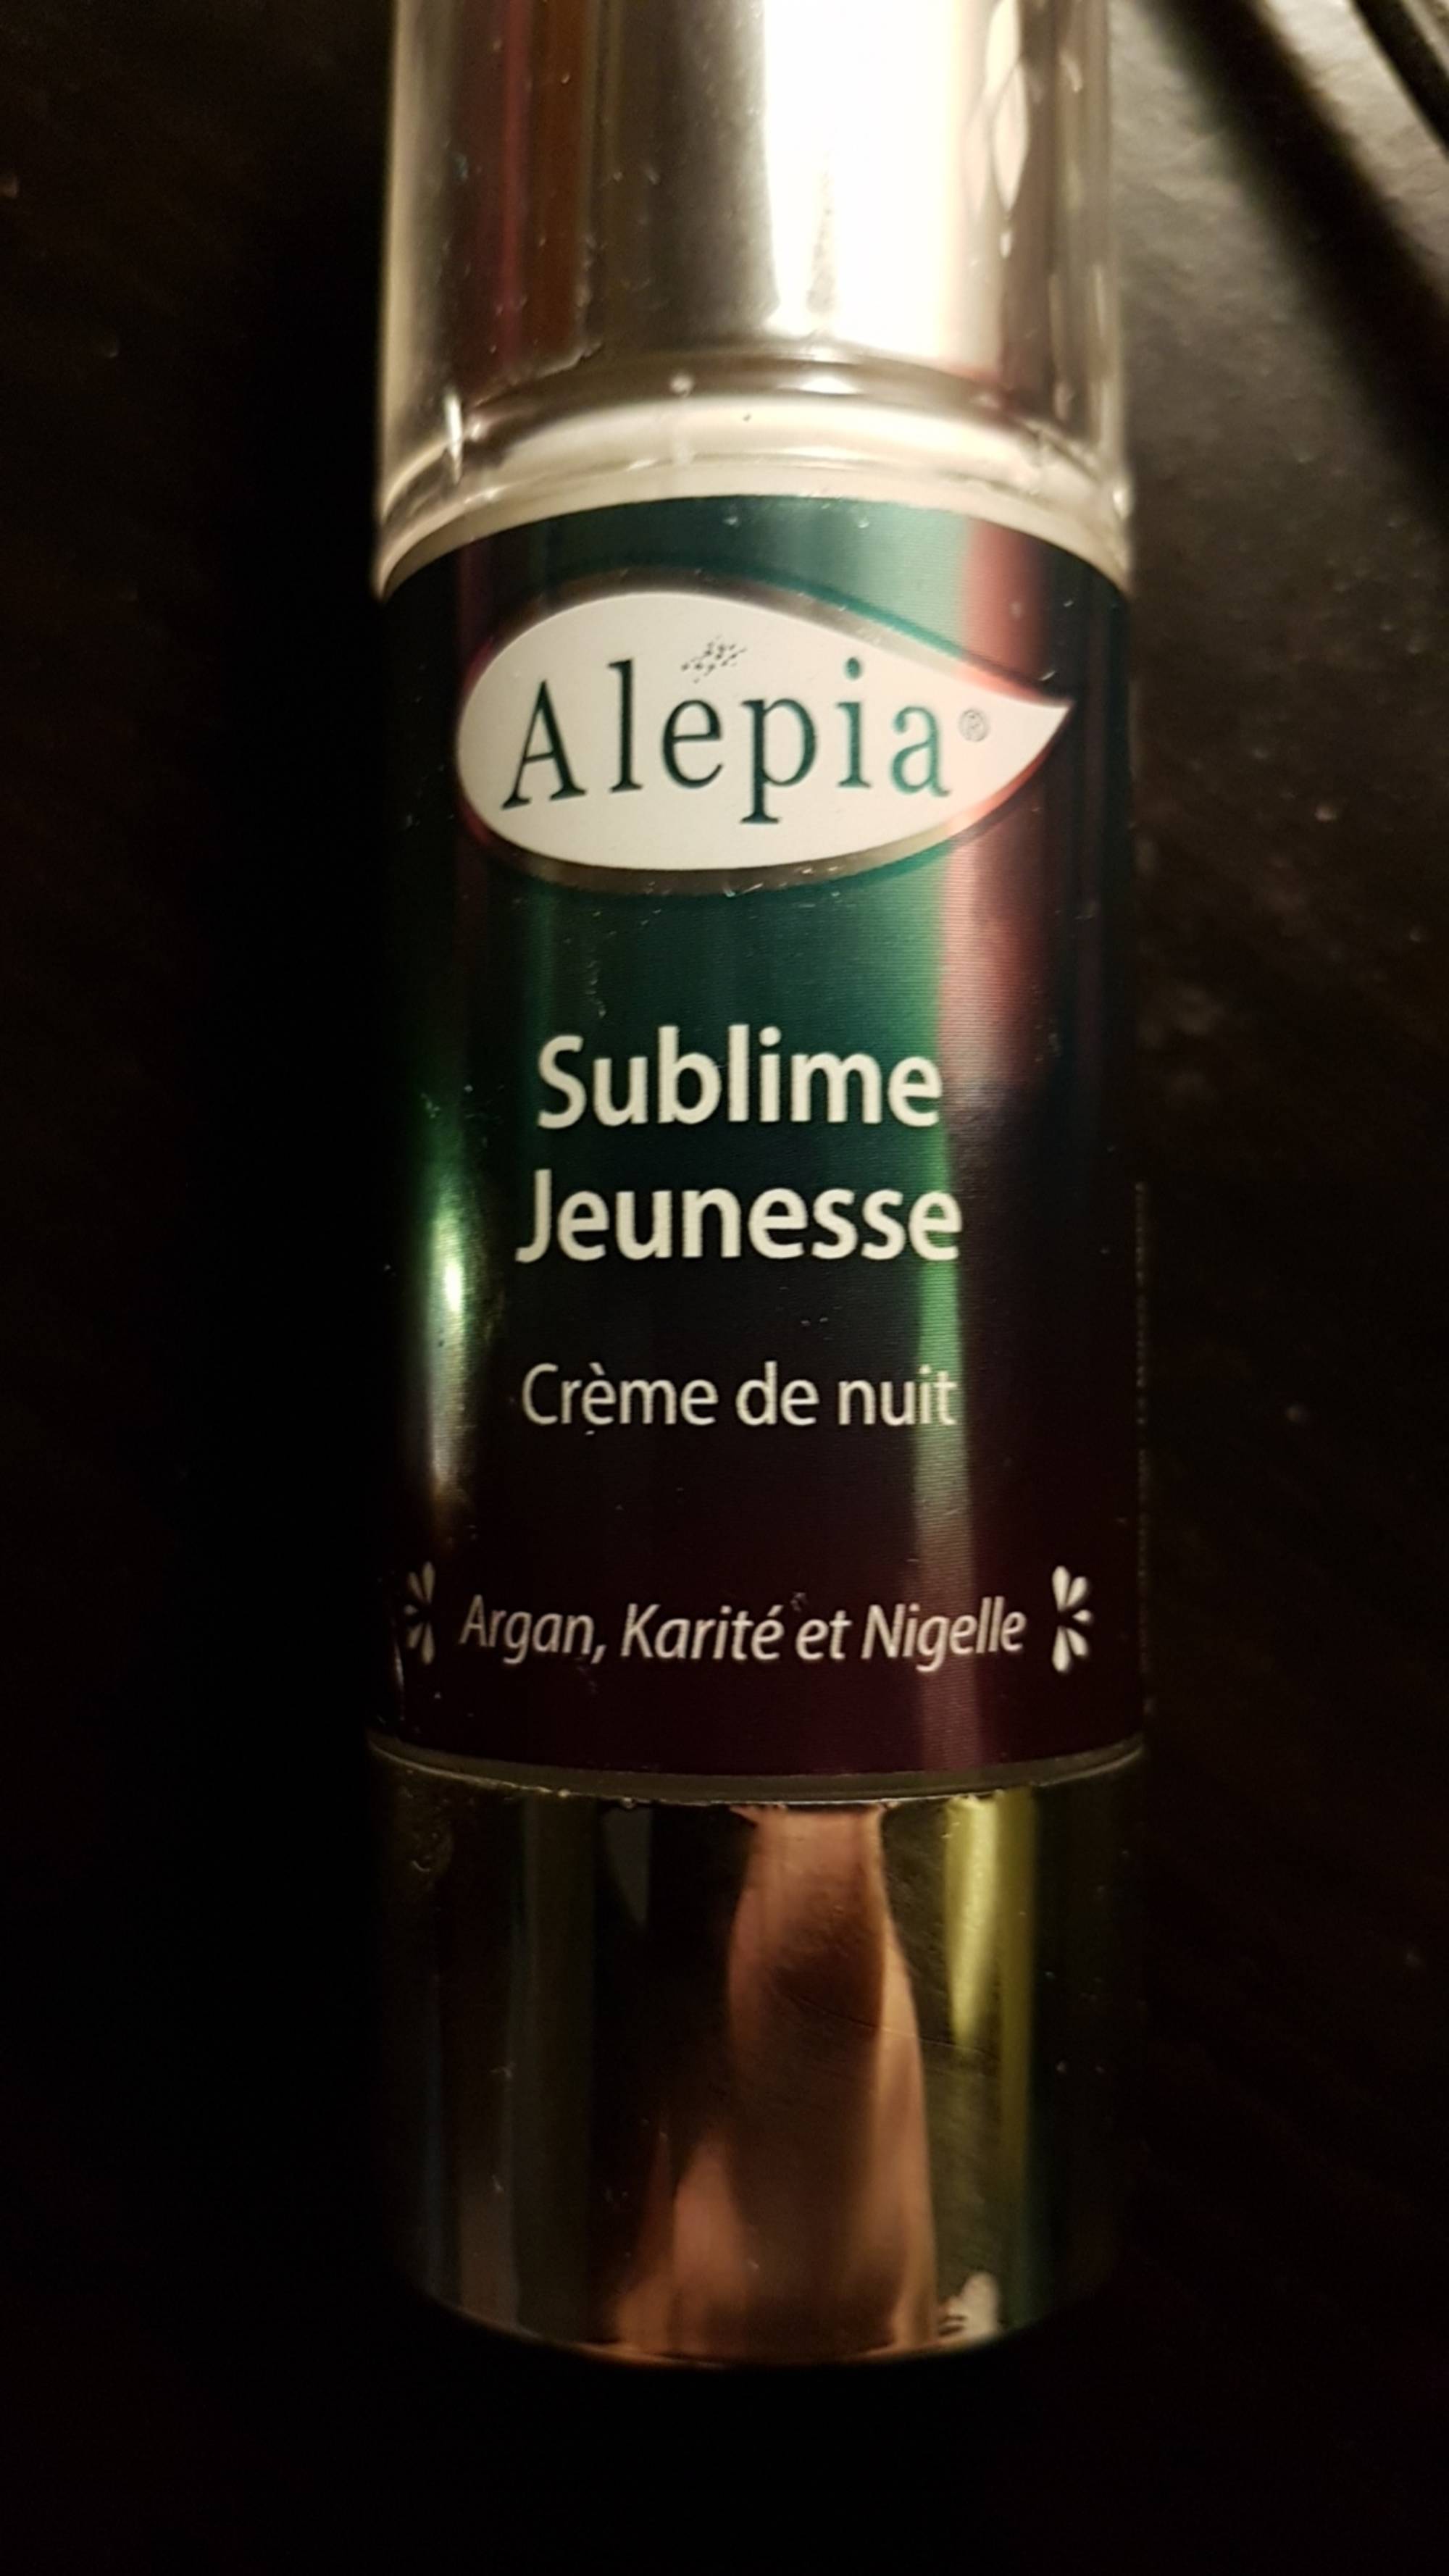 ALEPIA - Sublime jeunesse - Crème de nuit